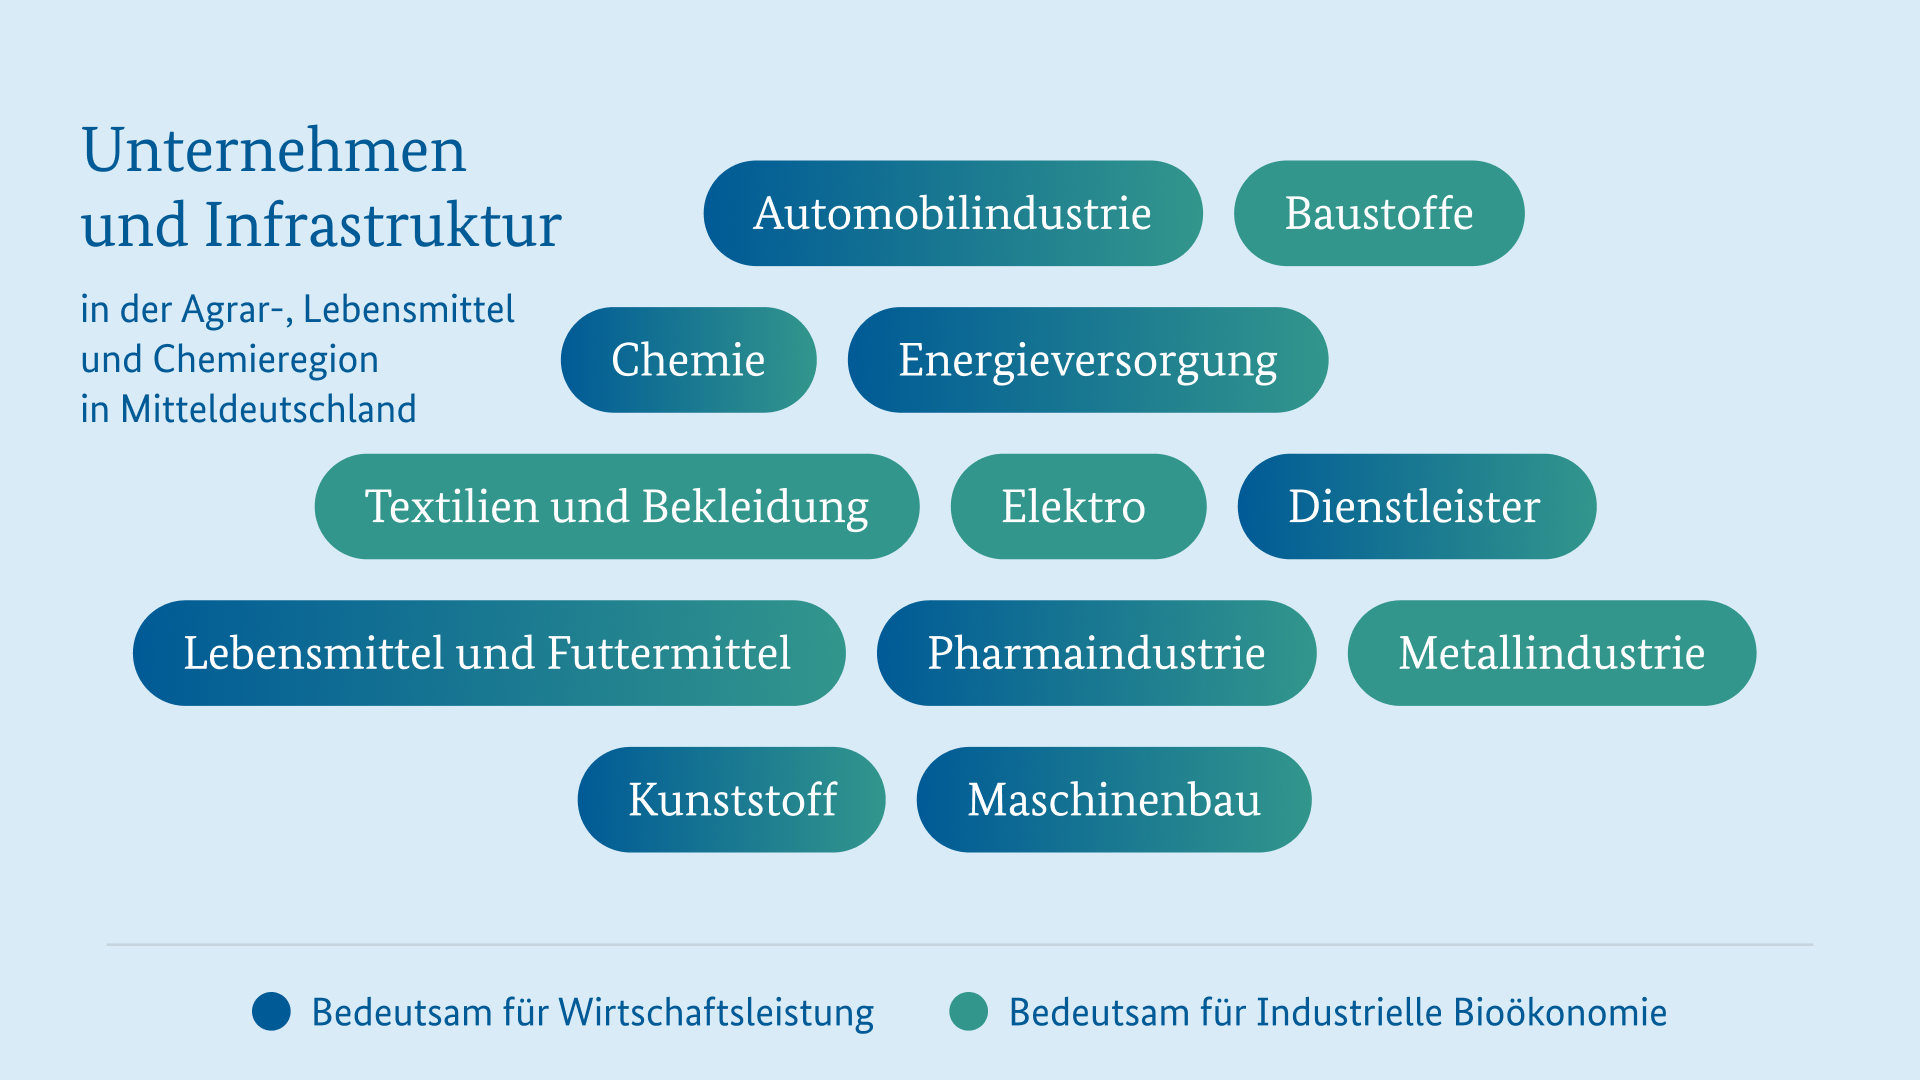 Unternehmen und Infrastruktur Agraregion Mitteldeutschland